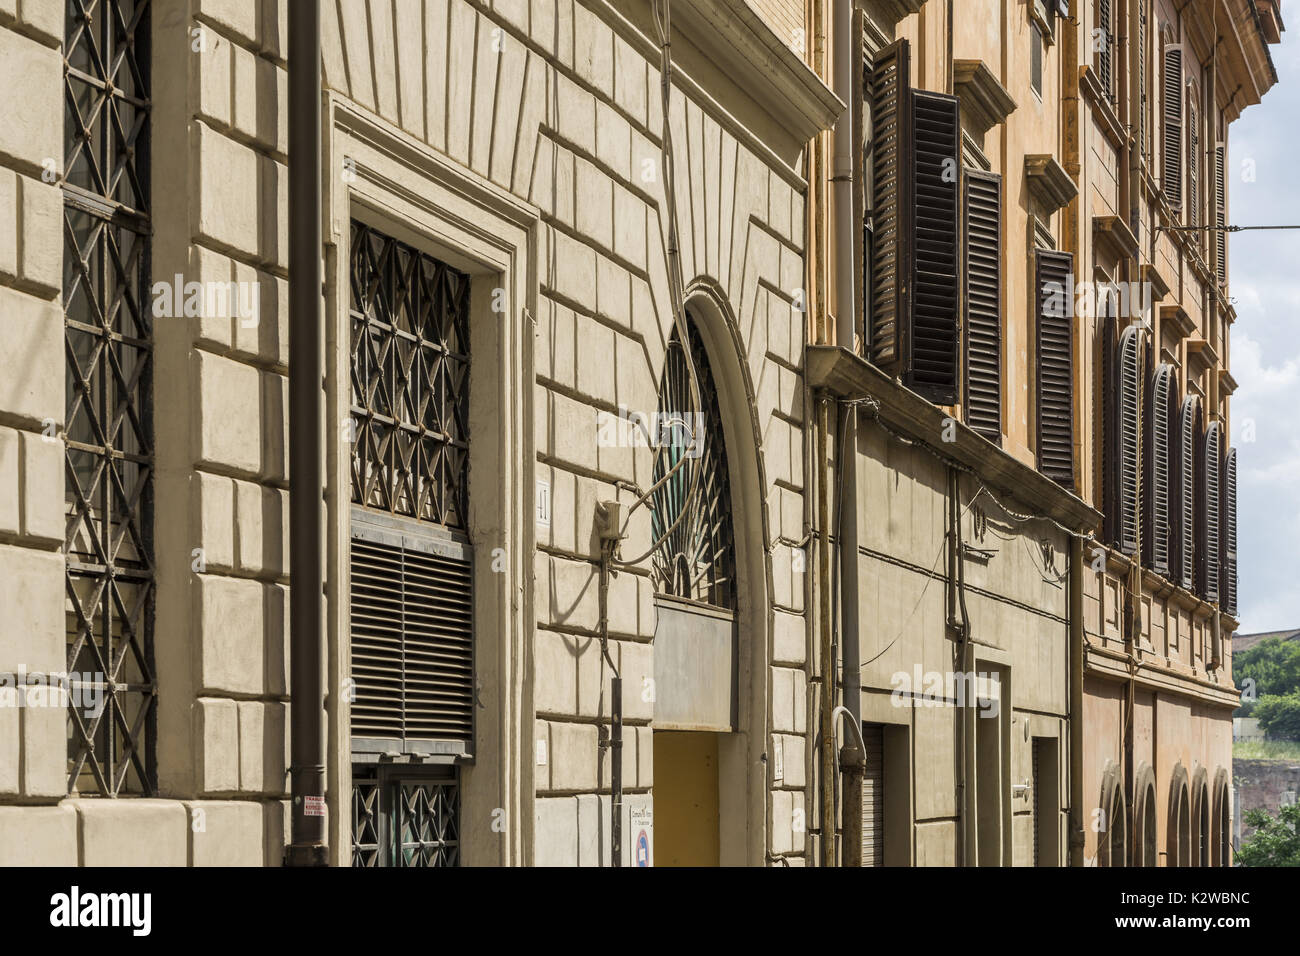 Rom, Italien. Teil der Fassade des alten Gebäudes mit architektonischen Details über den Fenstern. Stockfoto